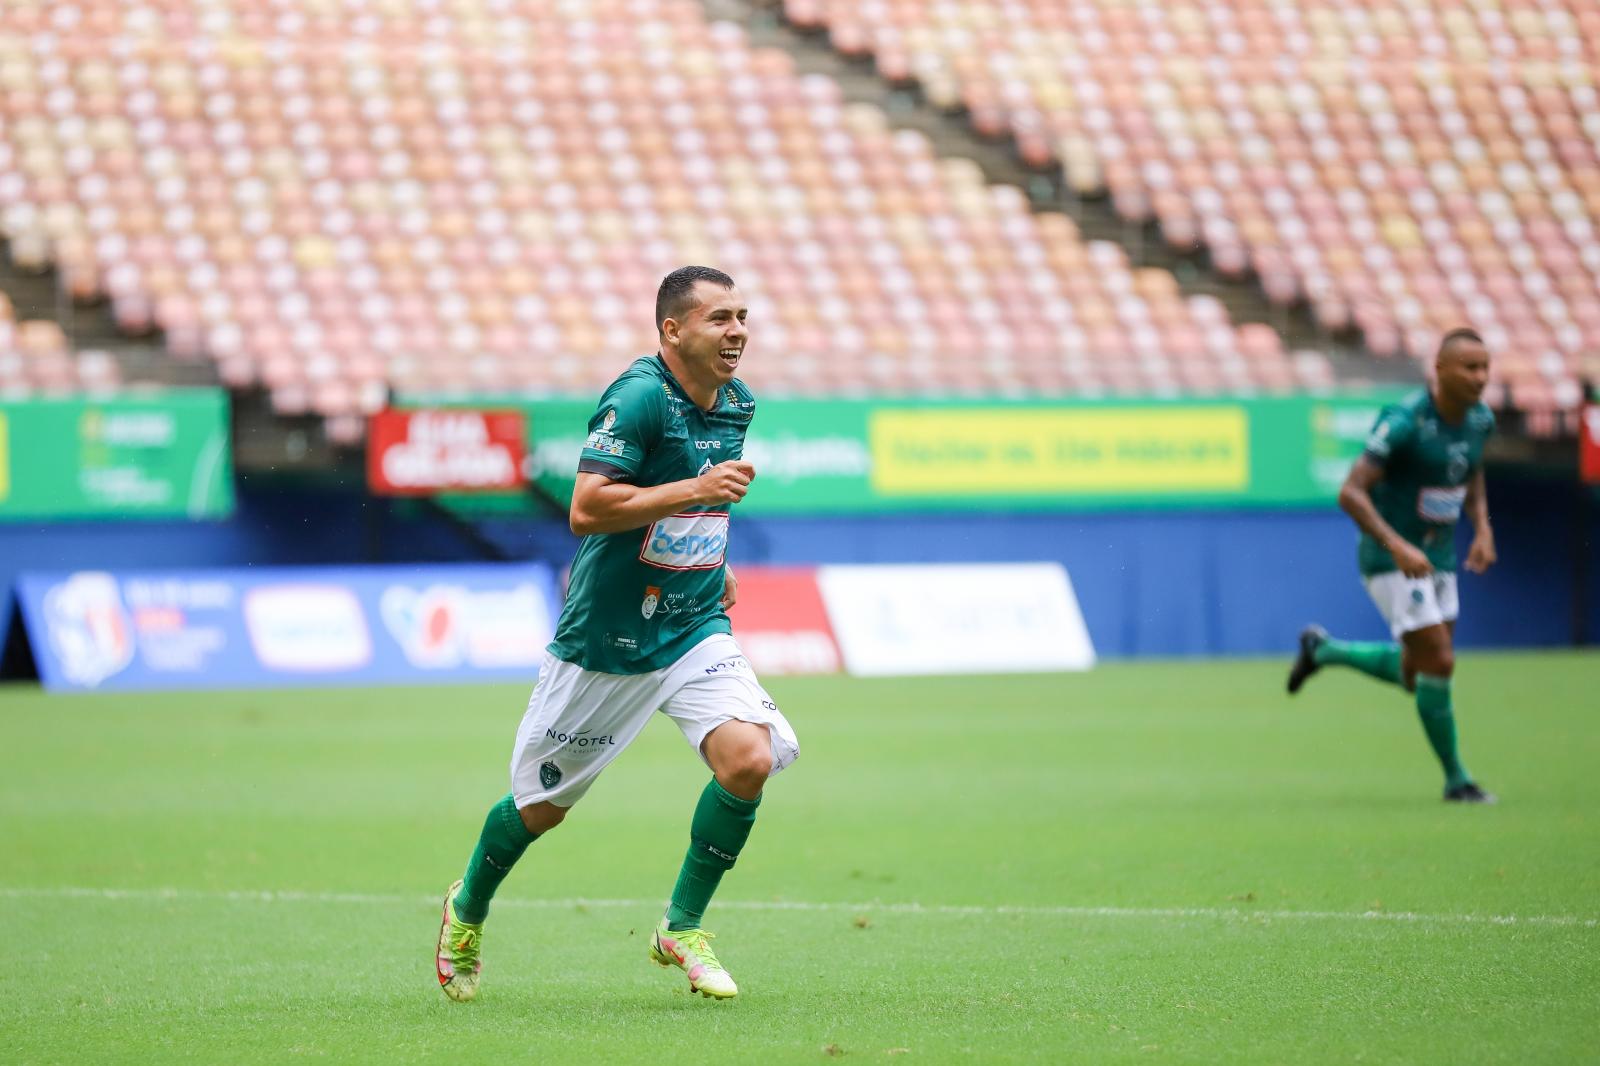 Emocionado, Alvinho dedica gol da vitória ao pai: "tenho certeza de que lá de cima ele acompanha meu trabalho"